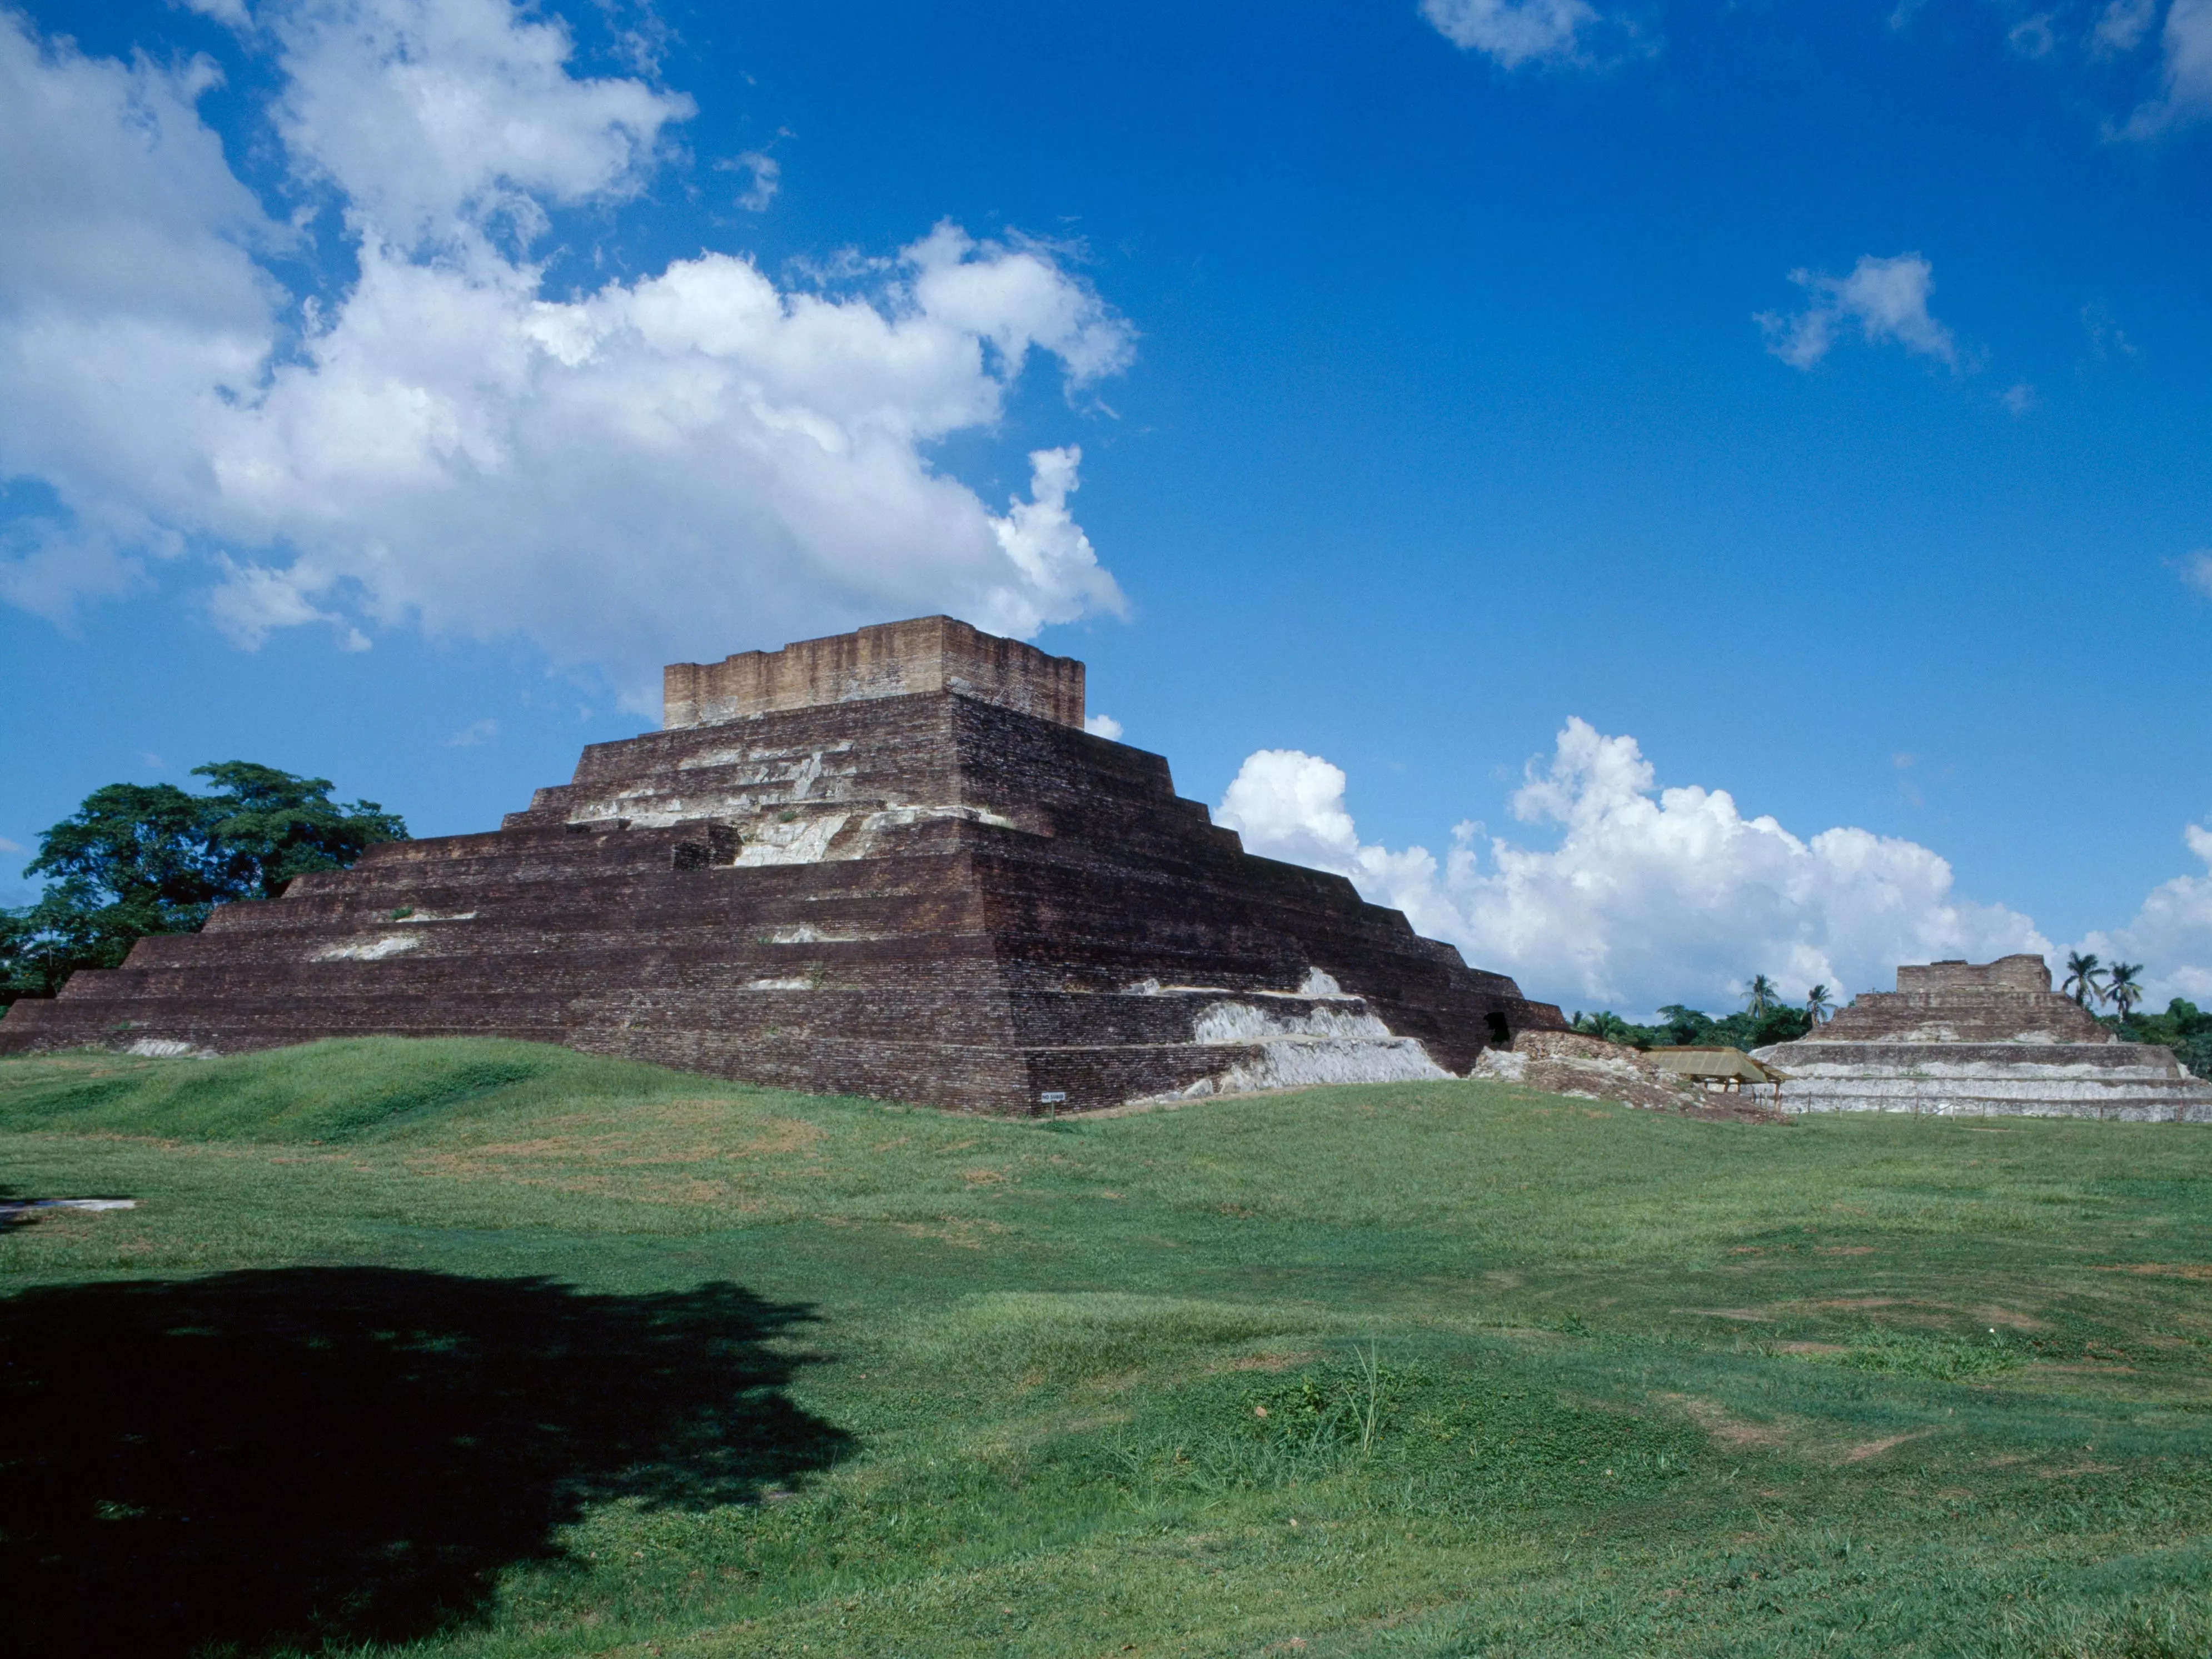 Los arqueólogos usaron láseres para encontrar cerca de 500 monumentos mesoamericanos escondidos en la jungla mexicana